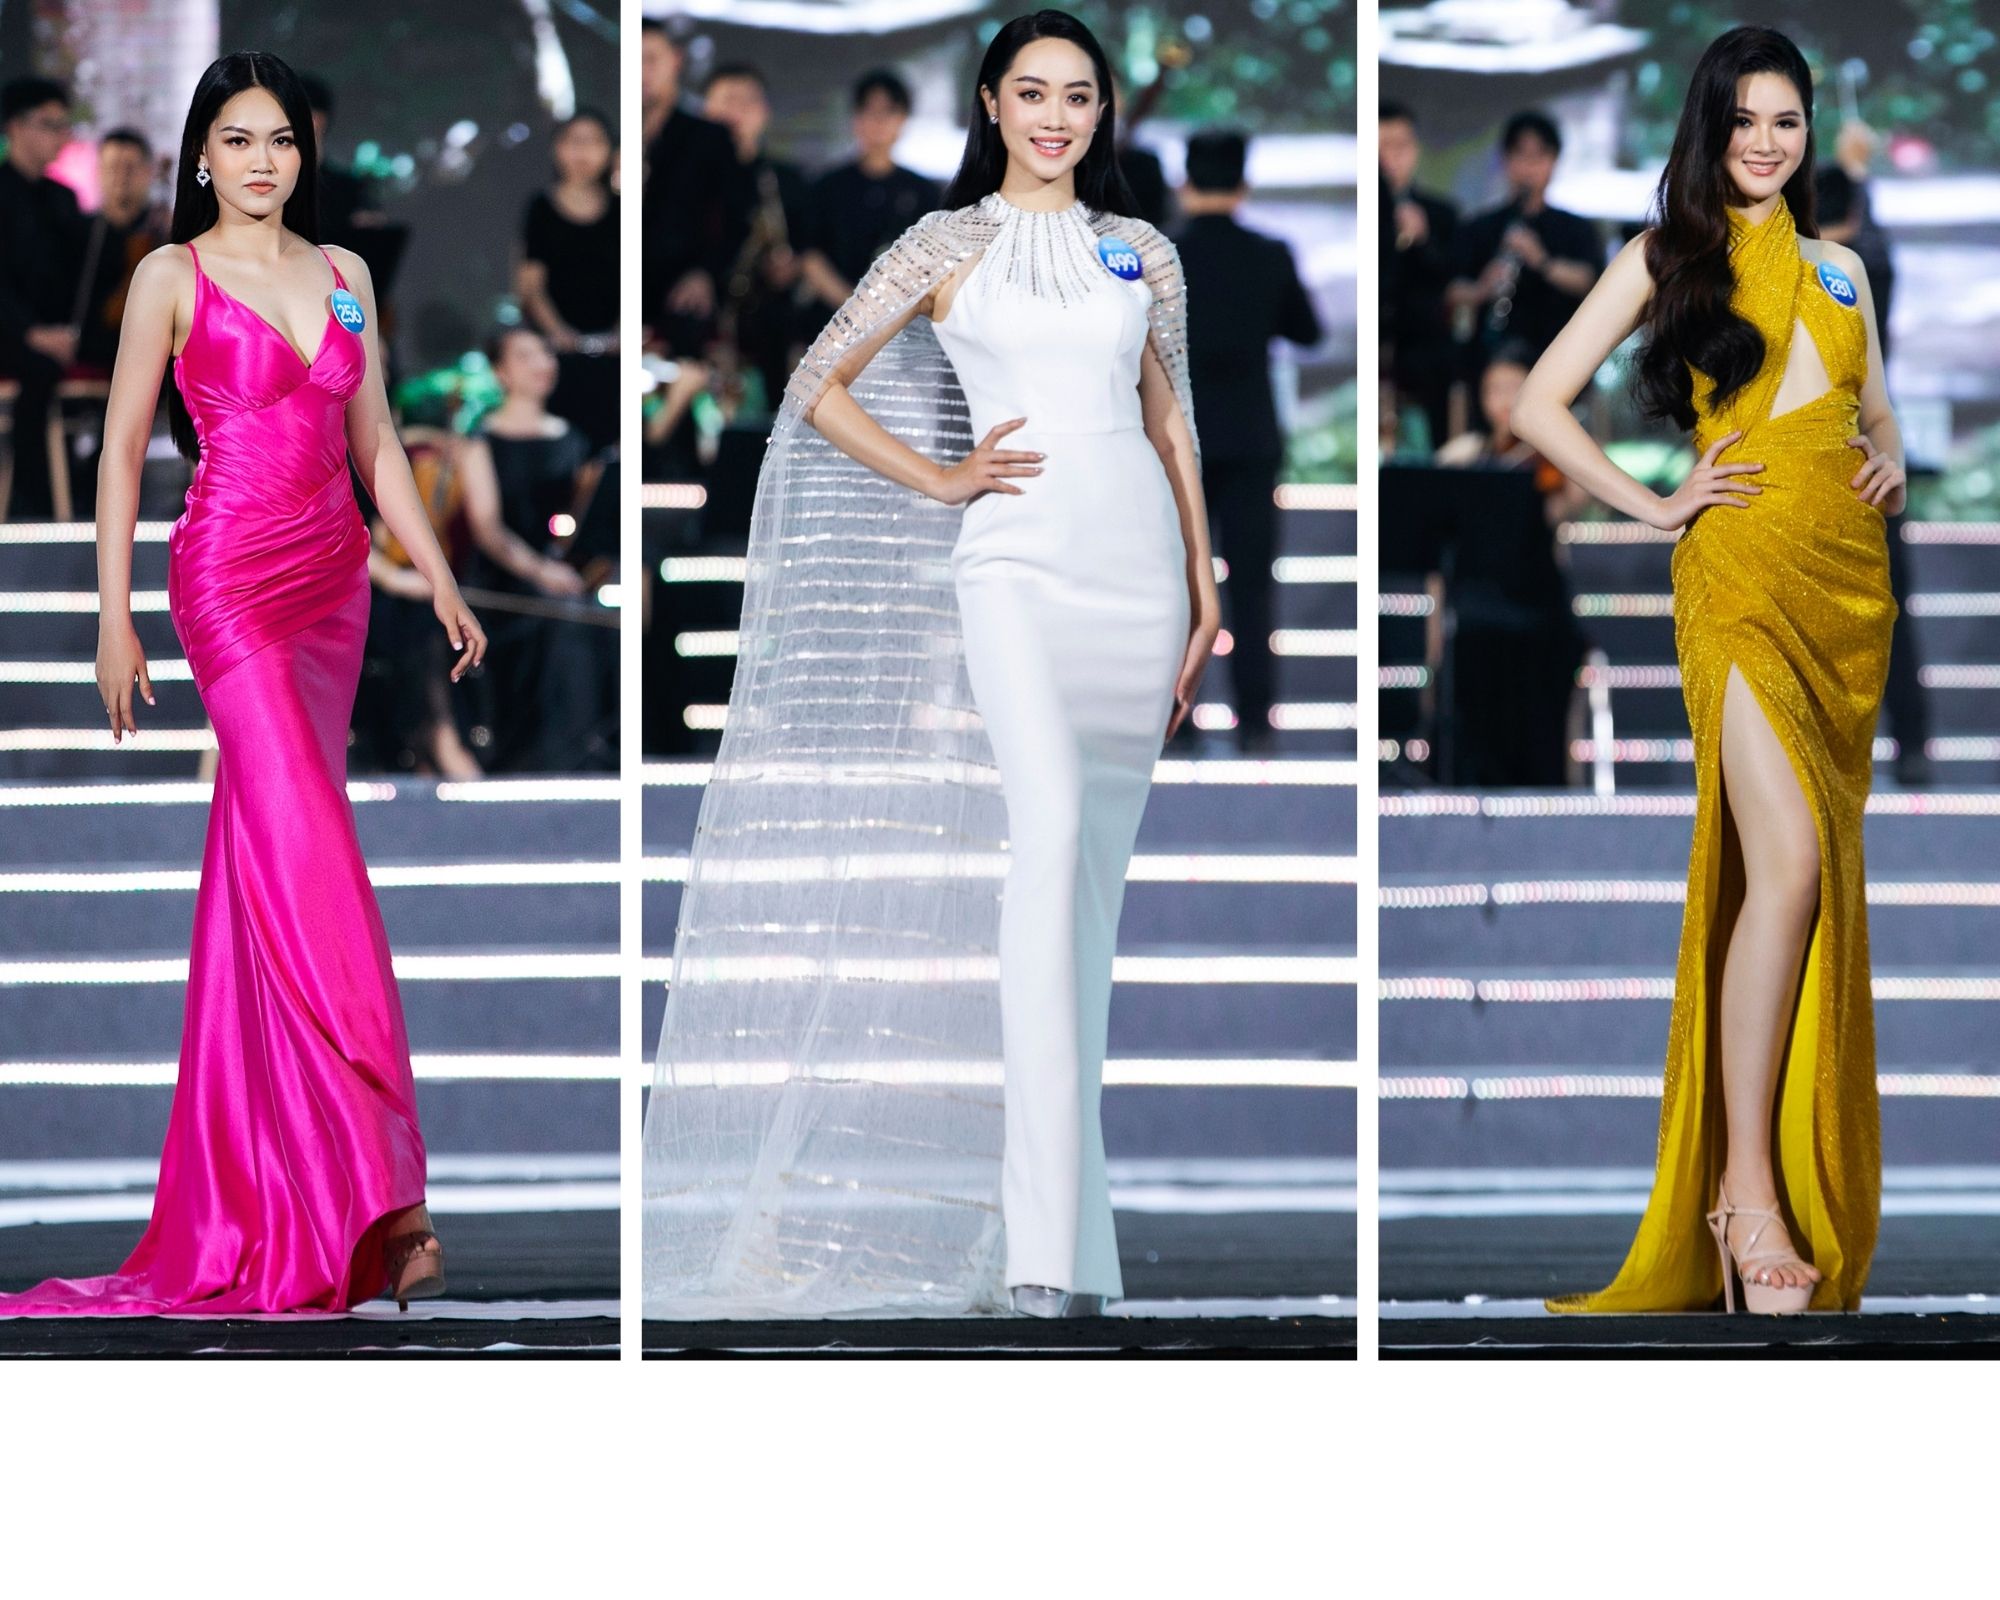 Dàn thí sinh “cực phẩm” của Miss World Vietnam 2022 trình diễn dạ hội